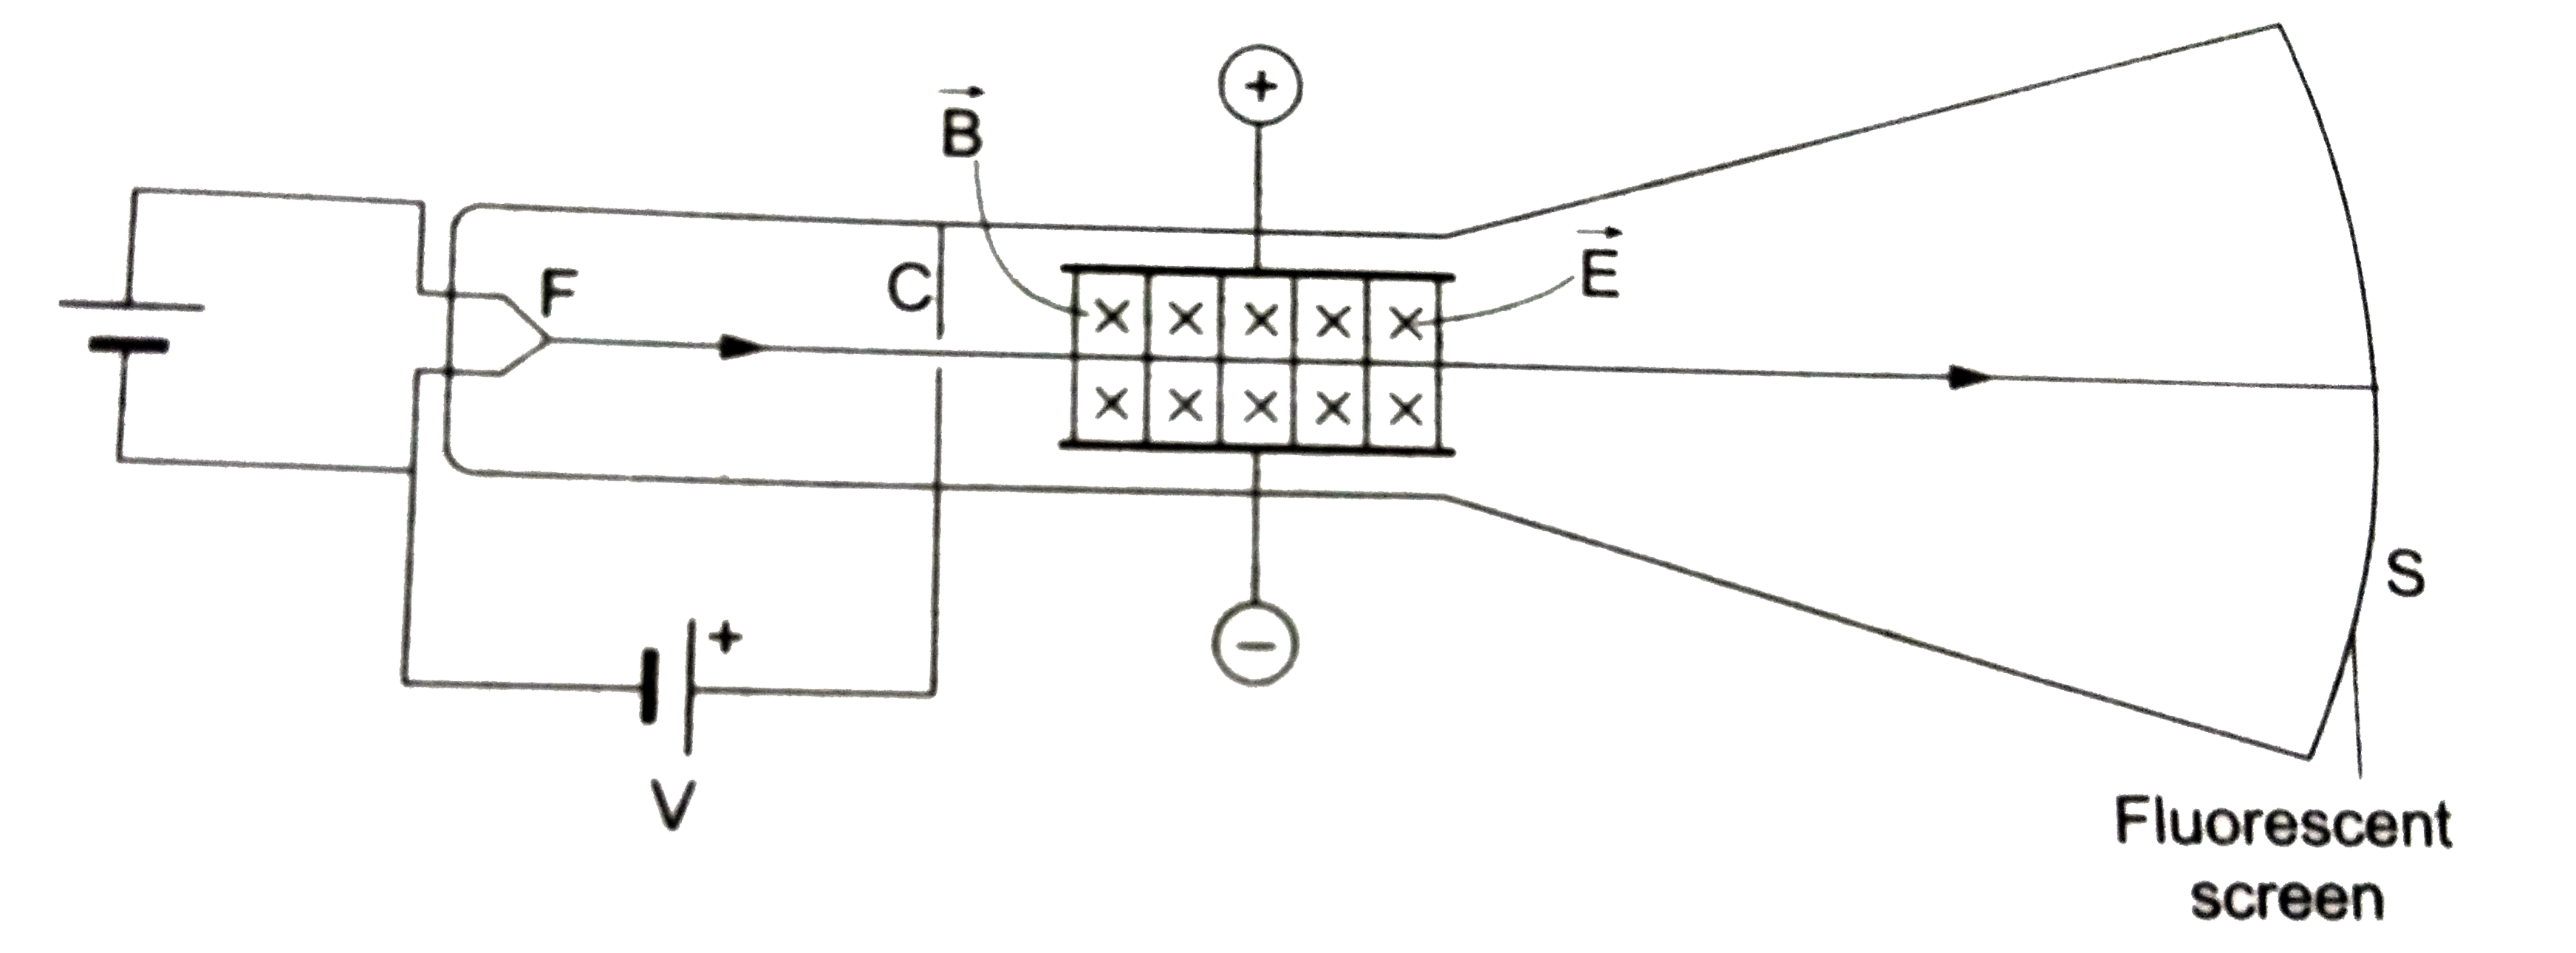 इलेक्ट्रॉन के विशिष्ट आवेश  ( specific charge ) ,  अर्थात् अनुपात , आवेश/द्रव्यमान ((e)/(m)) के निर्धारण के लिए सर जे0 जे0 थॉमसन व्दारा किए गए प्रयोग की व्यवस्था का आधुनिक प्रतिरुप चित्र में प्रदर्शित हैं । तप्त फिलामेंट F व्दारा उत्सर्जित इलेक्ट्रॉनों को विभवांतर V के अधीन त्वरित किया जाता हैं । सरल रेखा में गतिशील इलेक्ट्रॉनपुंज पर्दे C में बने संकीर्ण छिद्र से होकर बाहर निकलने के बाद एक ऐसे क्षेत्र से होकर गुजरता हैं जहाँ इलेक्ट्रॉन की संचरण दिशा के लंबवत परस्पर लंबवत दिशाओं में चुंबकीय क्षेत्र vec(B) तथा विद्युत क्षेत्र  vec(E) दोनों वर्तमान हैं । इसके बाद इलेक्ट्रॉनपुंज बिना क्षेत्र वाले स्थान से होकर प्रतिदीप्ति परदे (fluorescent screen) S पर आघात कर दीप्ति उत्पन्न करता हैं । इलक्ट्रॉन के गमन वाला पूरा क्षेत्र निर्वातित ( evacuated)  रहता हैं ।      सर्वप्रथम vec(E) तथा vec(B) क्षेत्रों की अनुपस्थिति में पर्दे S पर अविक्षेपित (undeflected) इलेक्ट्रॉन व्दारा उत्पन्न प्रदीप्त - बिंदु की स्थिति नोट की जाती हैं । फिर , विद्युत - क्षेत्र vec(E)   की उपस्थिति में इलेक्ट्रॉन - पुंज का पर्दे पर विक्षेप d(1) नोट किया जाता हैं । इसके  बाद चुंबकीय क्षेत्र vec(B) की प्रबलता को समंजित कर दीप्ति - बिंदु को पुनः प्रारंभिक अविक्षेपित स्थिति में लाया जाता हैं । इस अवस्था में विद्युतीय बल F(e) तथा चुंबकीय बल F(B) एक  - दूसरे को निष्फल कर देते हैं , अर्थात् e(E) = ev(B). प्राप्त प्रेक्षणों से इलेक्ट्रॉन का विशिष्ट द्रव्यमान (e)/(m) निर्धारित किया जाता हैं ।   थॉमसन की प्रायोगिक व्यवस्था में टयूब को निर्वातित करने की आवश्यकता क्यो हुई ?
थॉमसन की प्रायोगिक व्यवस्था में टयूब को निर्वातित करने की आवश्यकता क्यों हुई ?